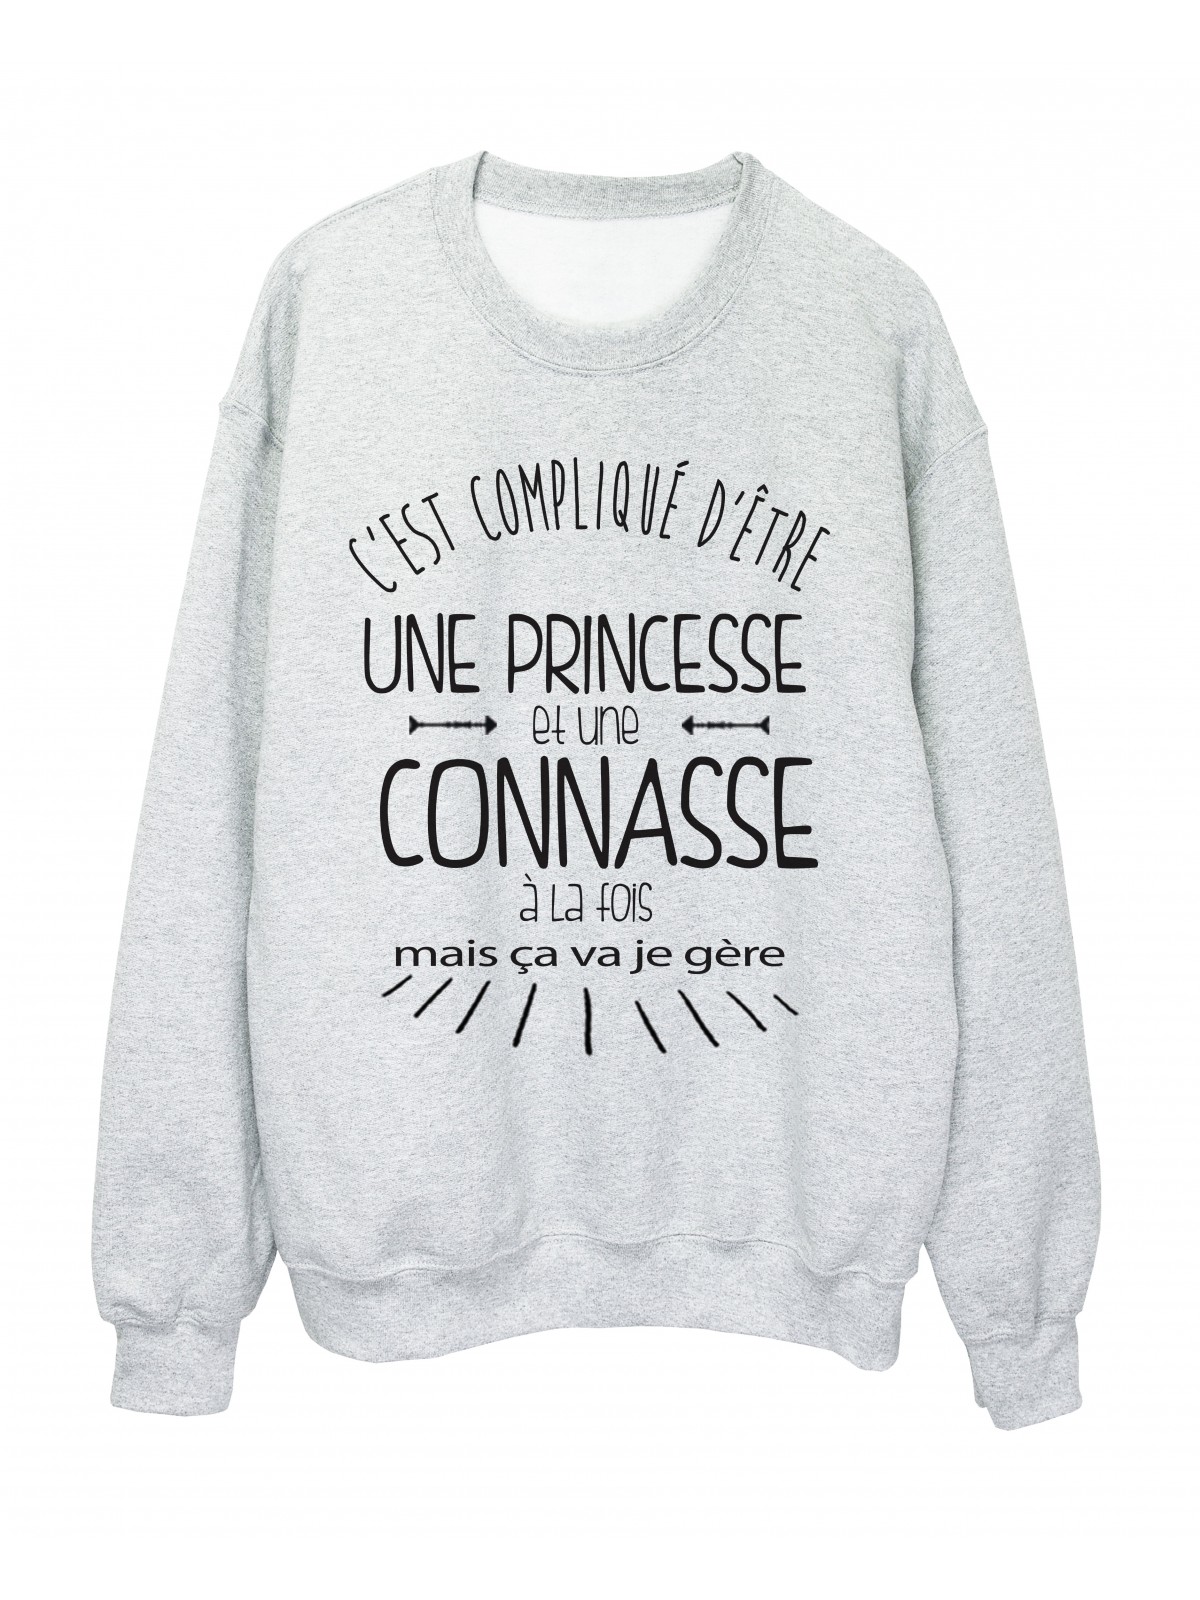 Sweat shirt citation humour c'est compliquÃ© d'etre une princesse et une connasse ref 2342